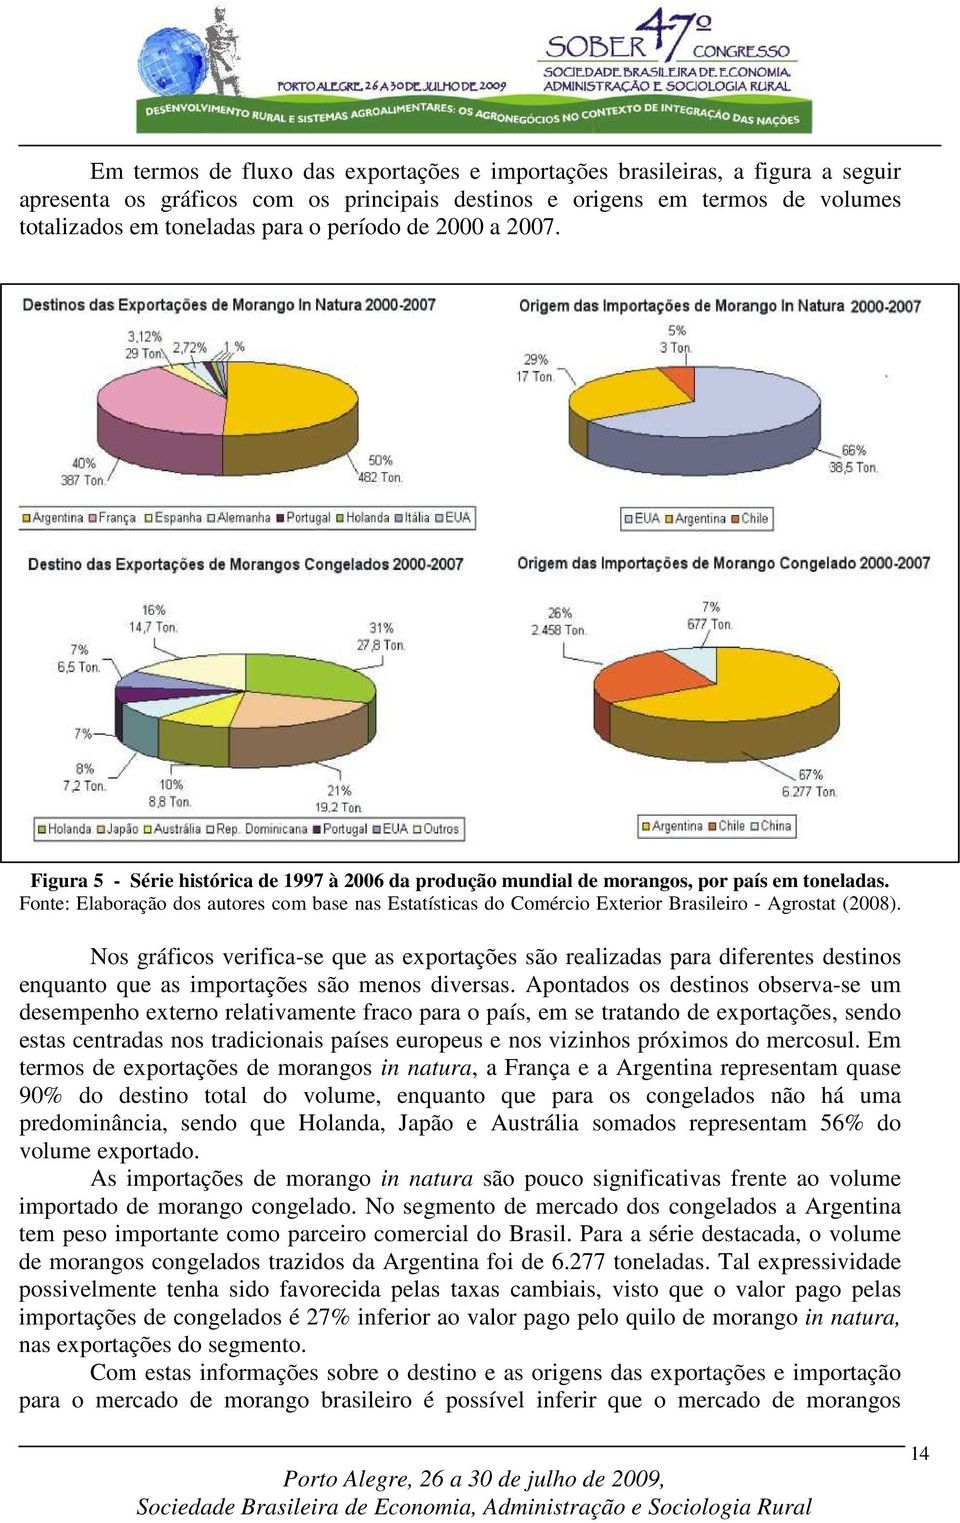 Fonte: Elaboração dos autores com base nas Estatísticas do Comércio Exterior Brasileiro - Agrostat (2008).